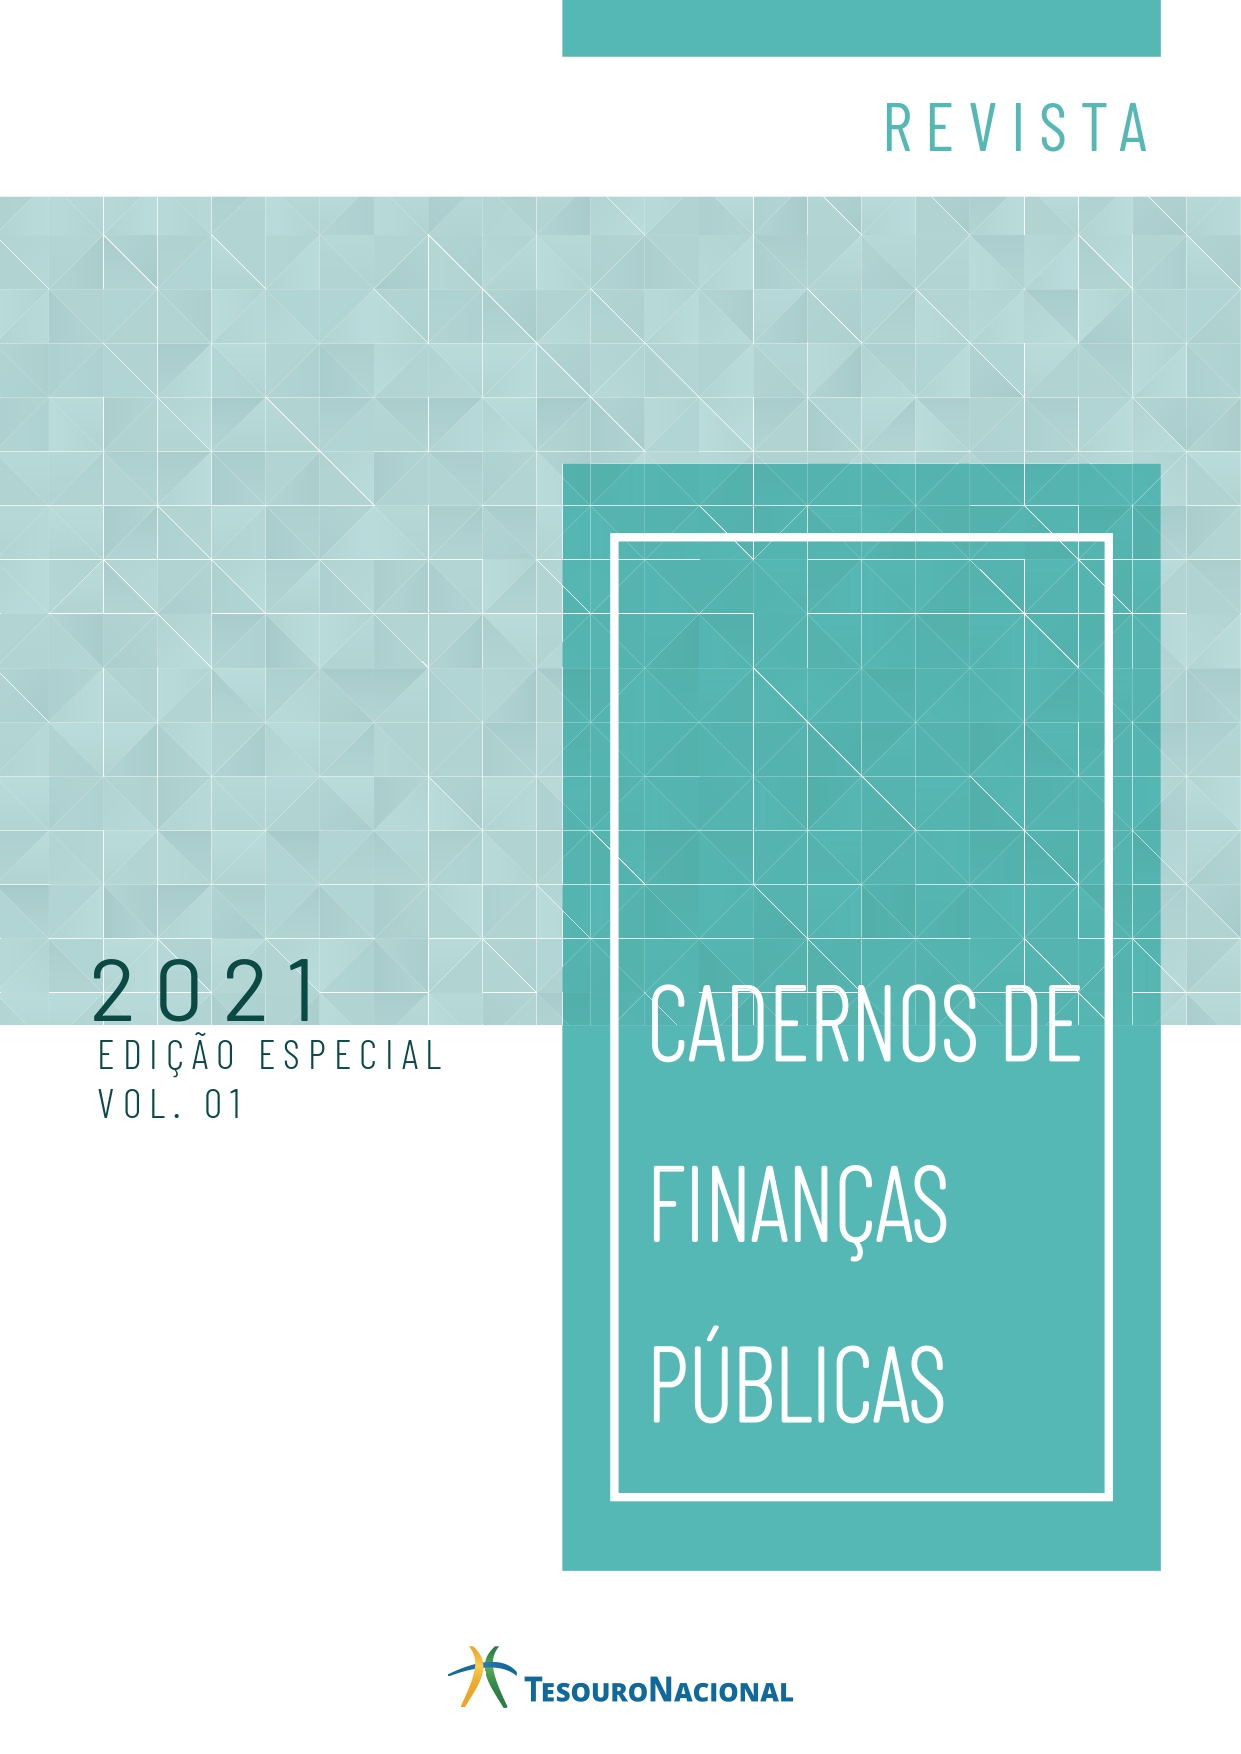 					Visualizar v. 21 n. 1 (2021): CADERNO DE FINANÇAS PÚBLICAS - "EDIÇÃO ESPECIAL"
				